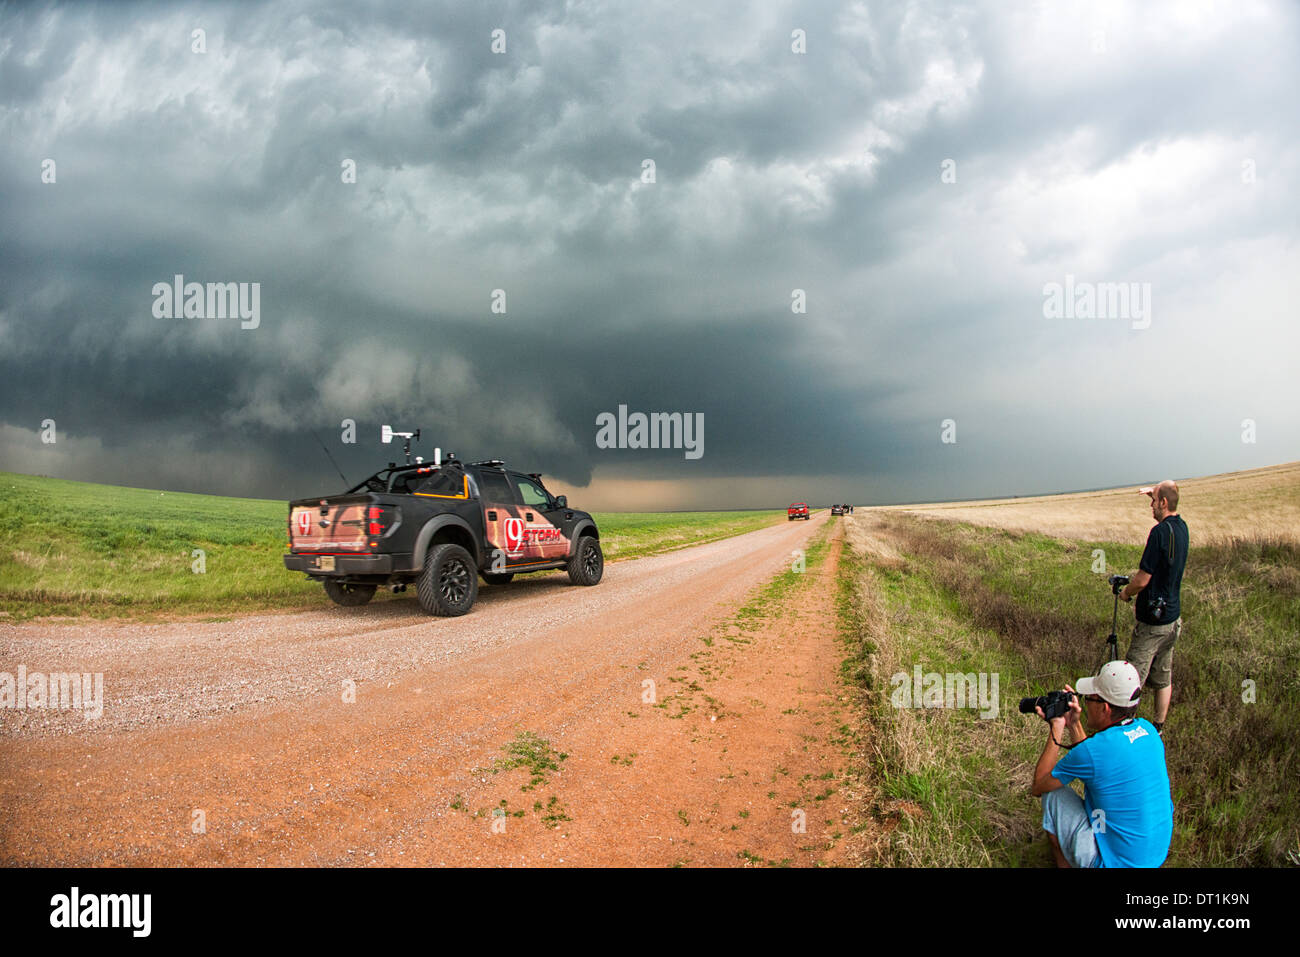 Stormchasers et channel 9 camion de rapports lors d'orages supercellulaires près de Sterling, Illinois, USA Banque D'Images